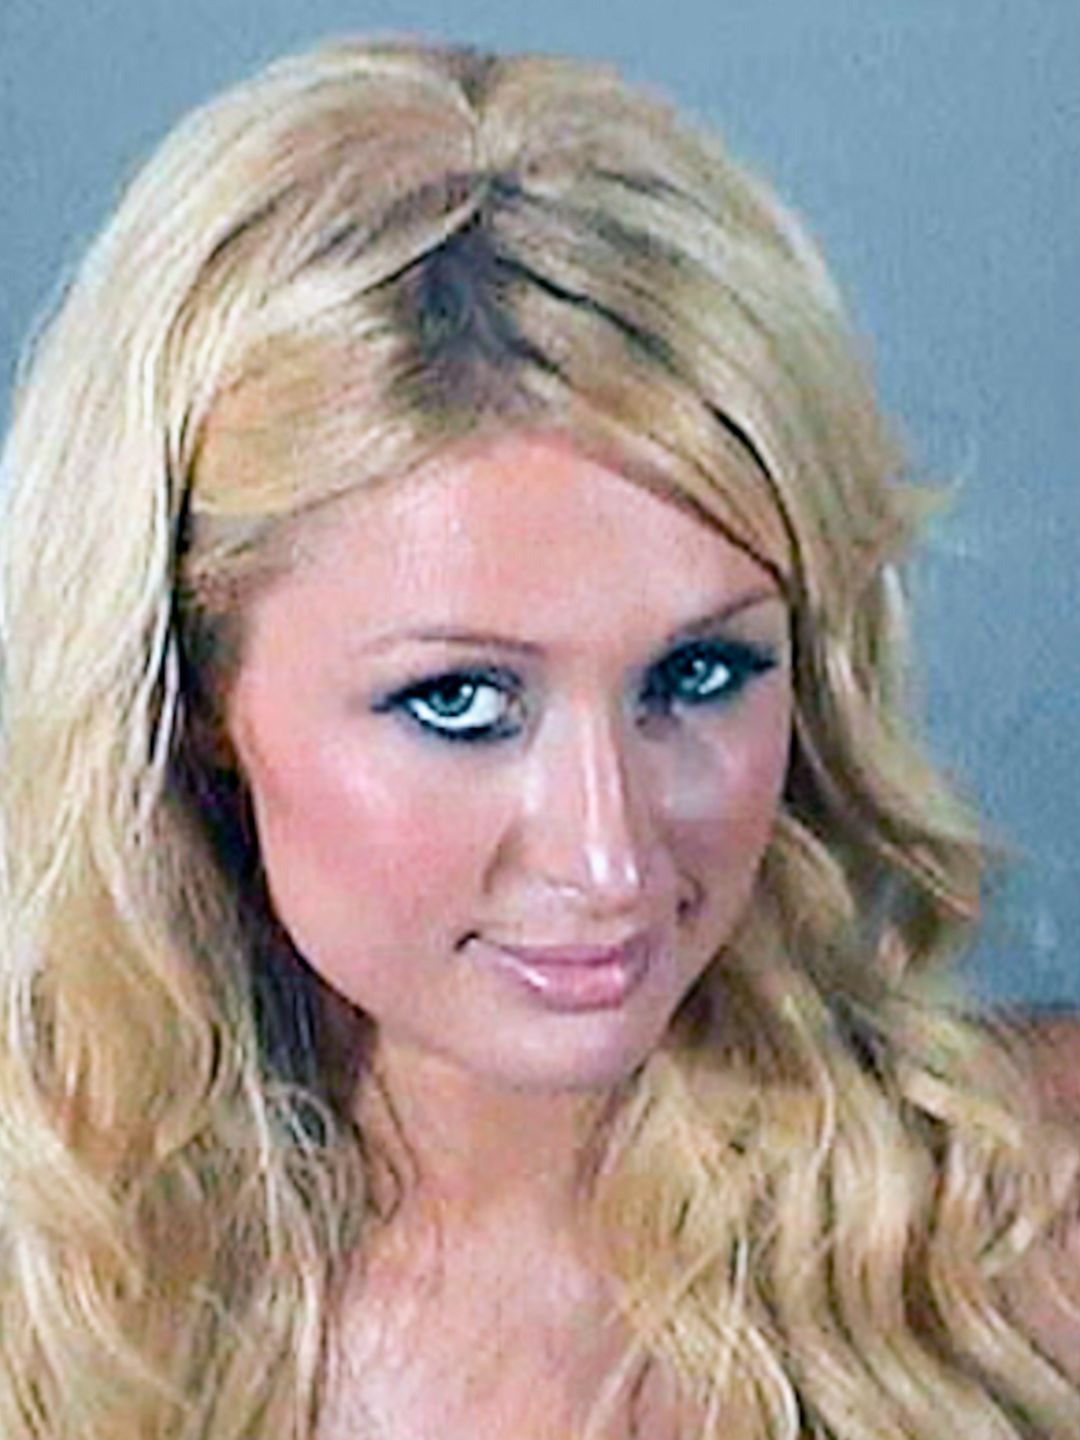 Headshot of Paris Hilton's mugshot